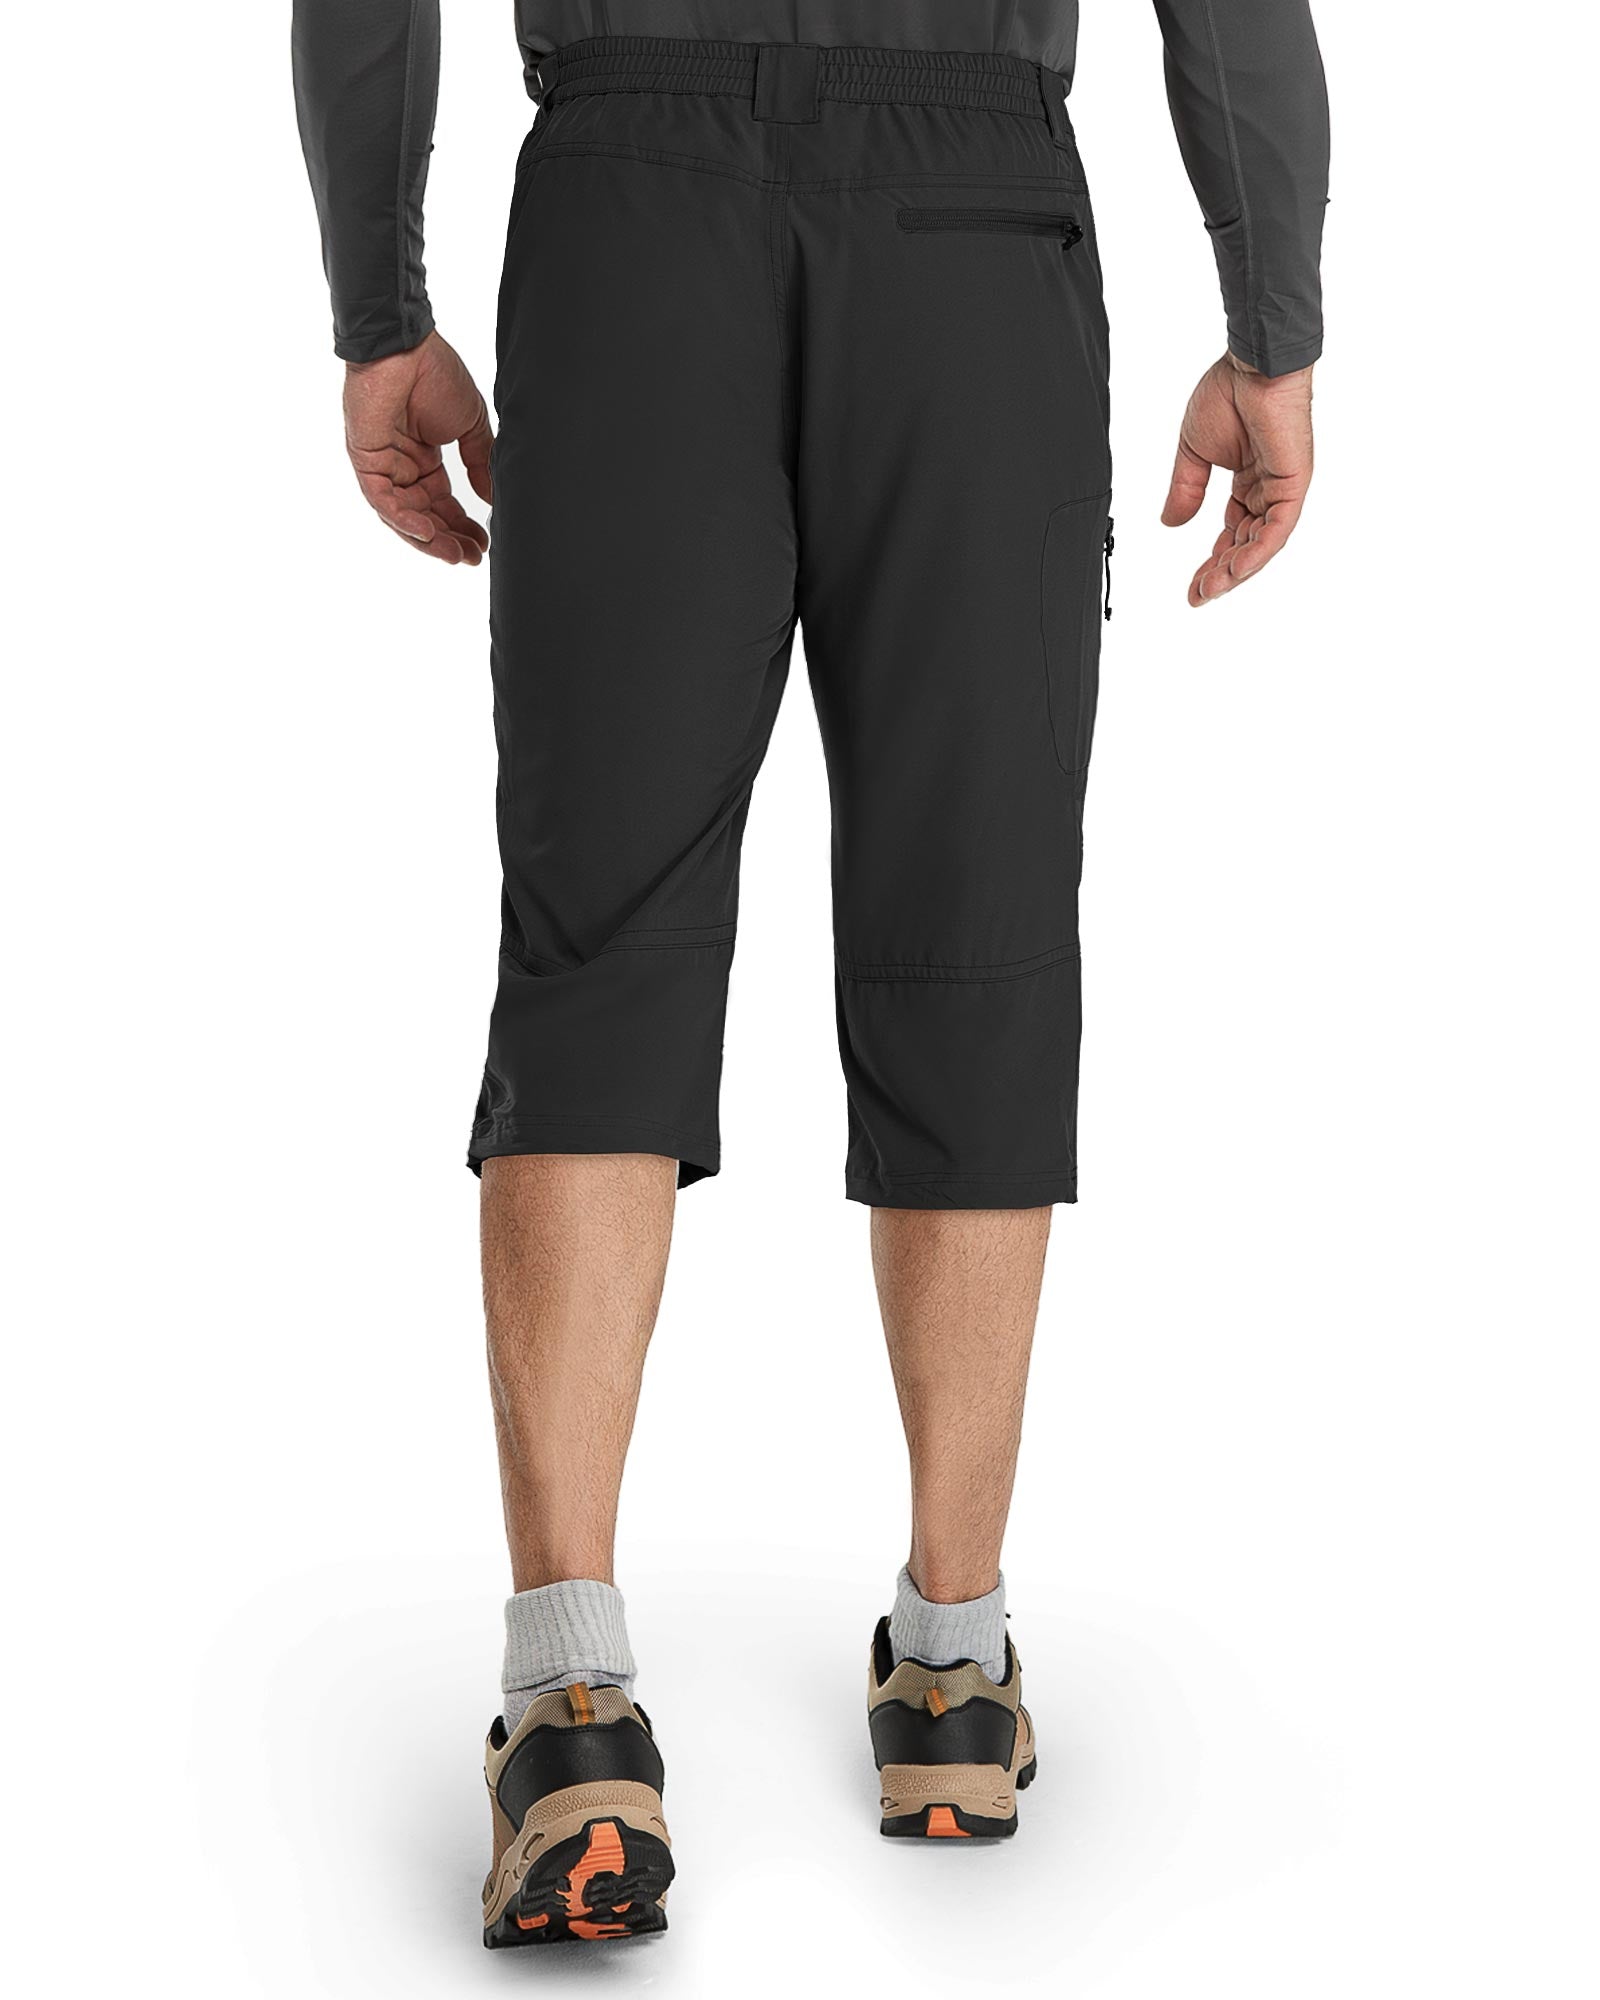 Men's 3/4 Long Capri Shorts – 33,000ft